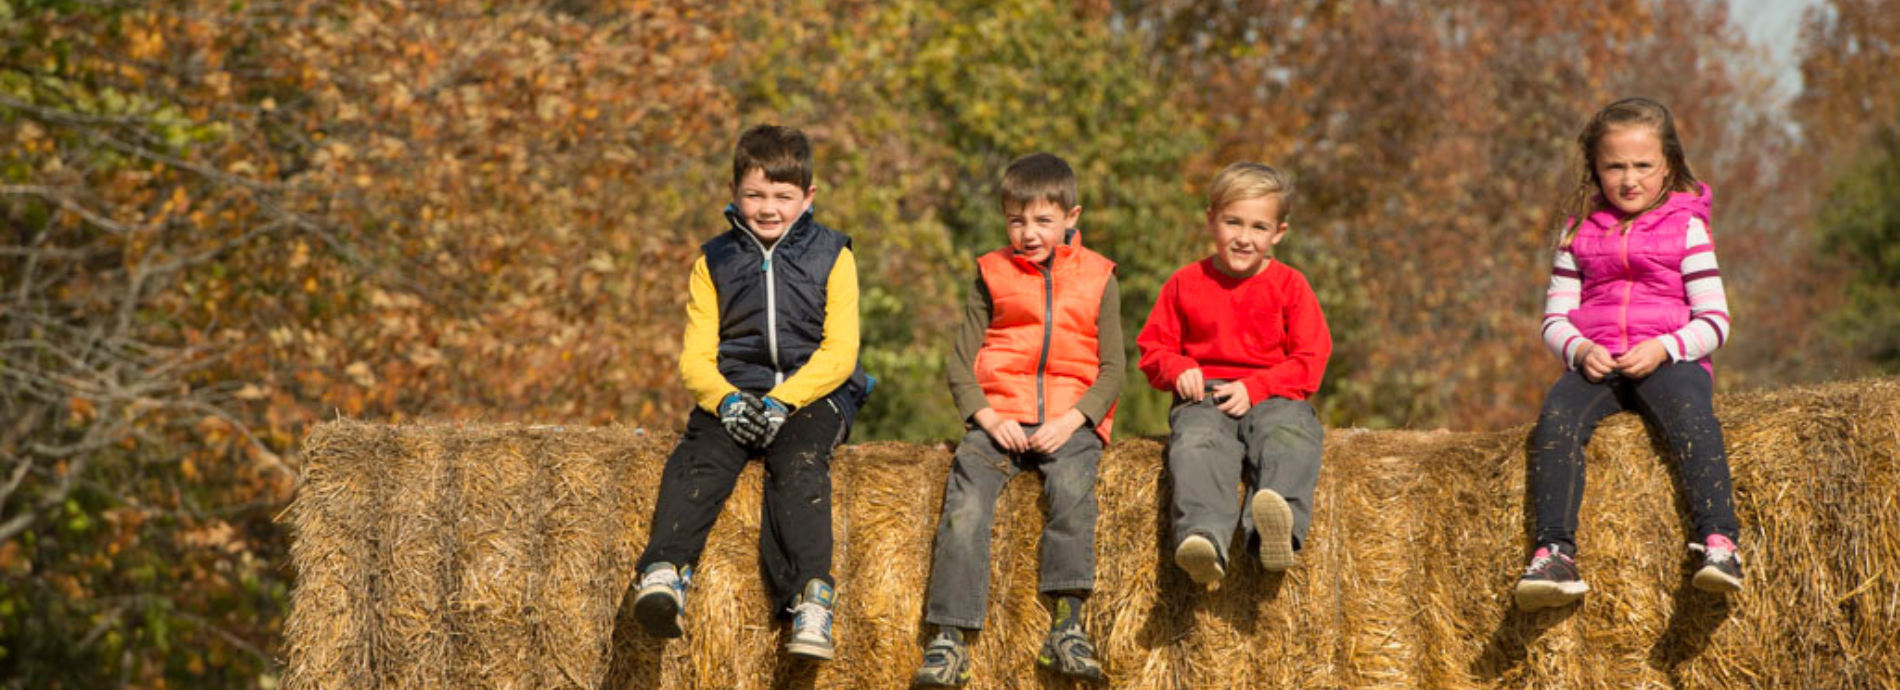 children sitting on hay bales in autumn